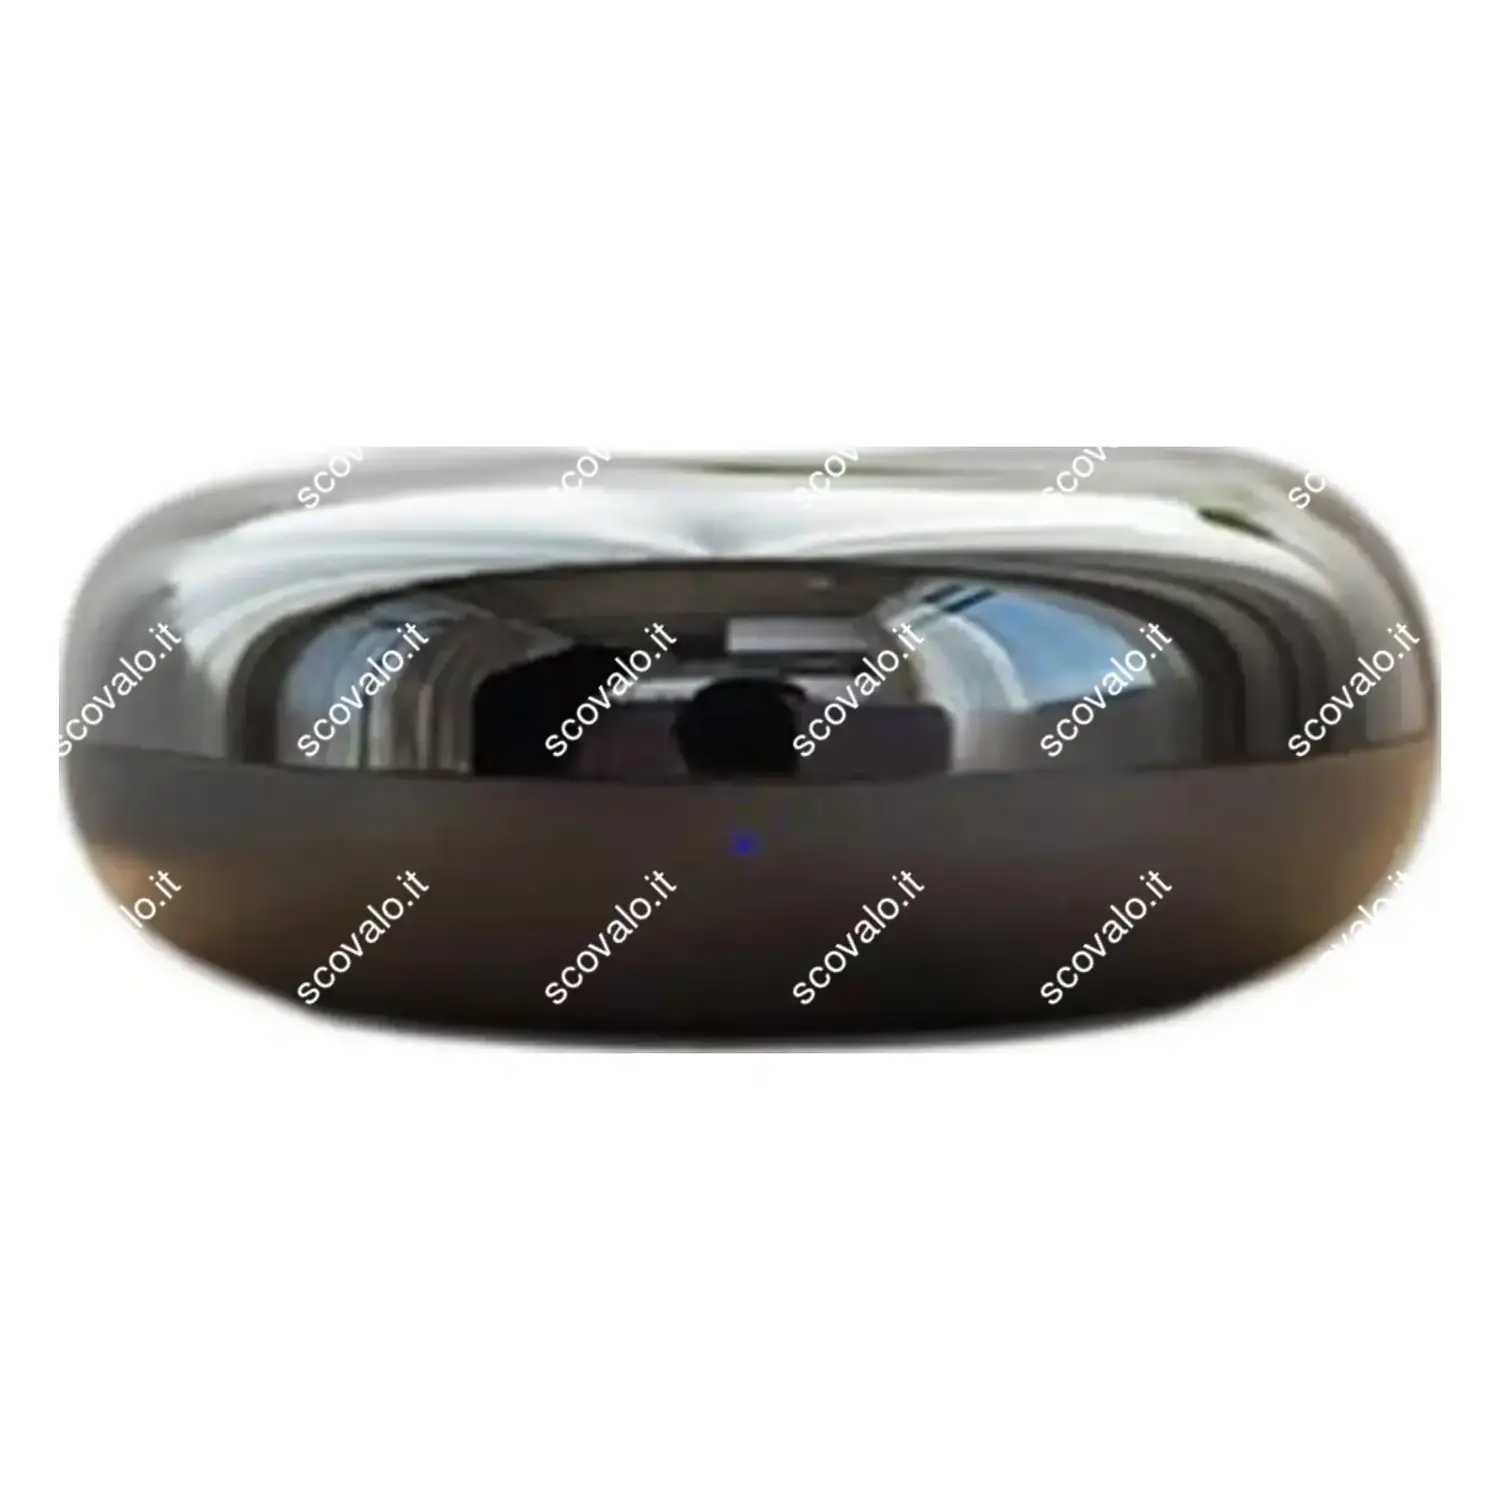 immagine del prodotto telecomando smart universale wi-fi infrarossi condizionatore tuya alexa google